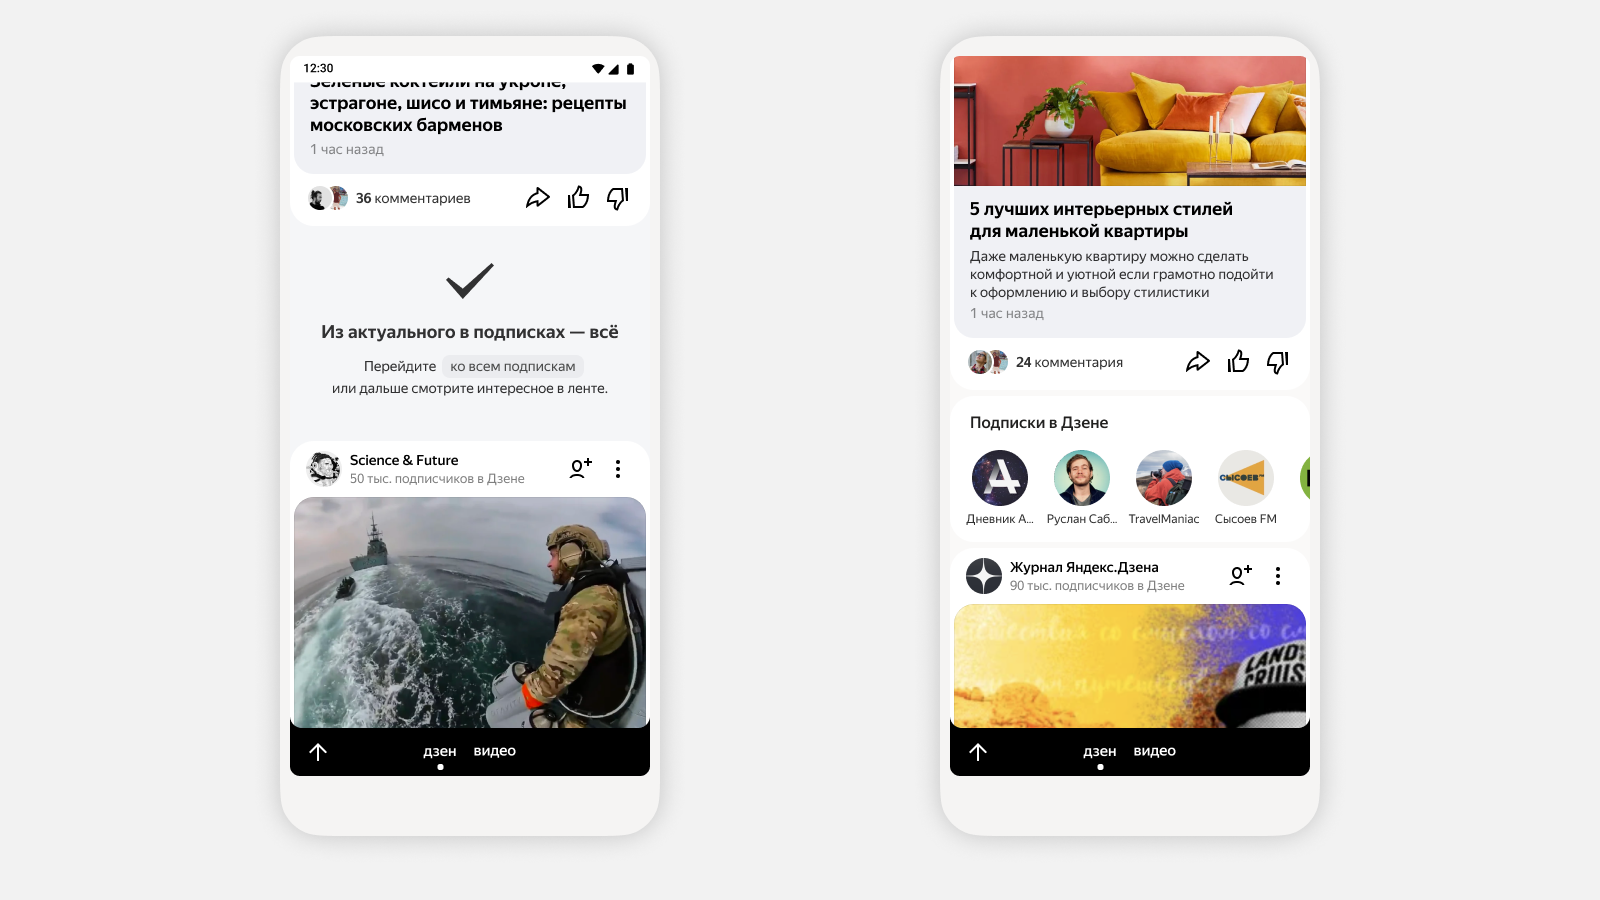 Яндекс.Дзен обновил интерфейс и подход к формированию ленты контента